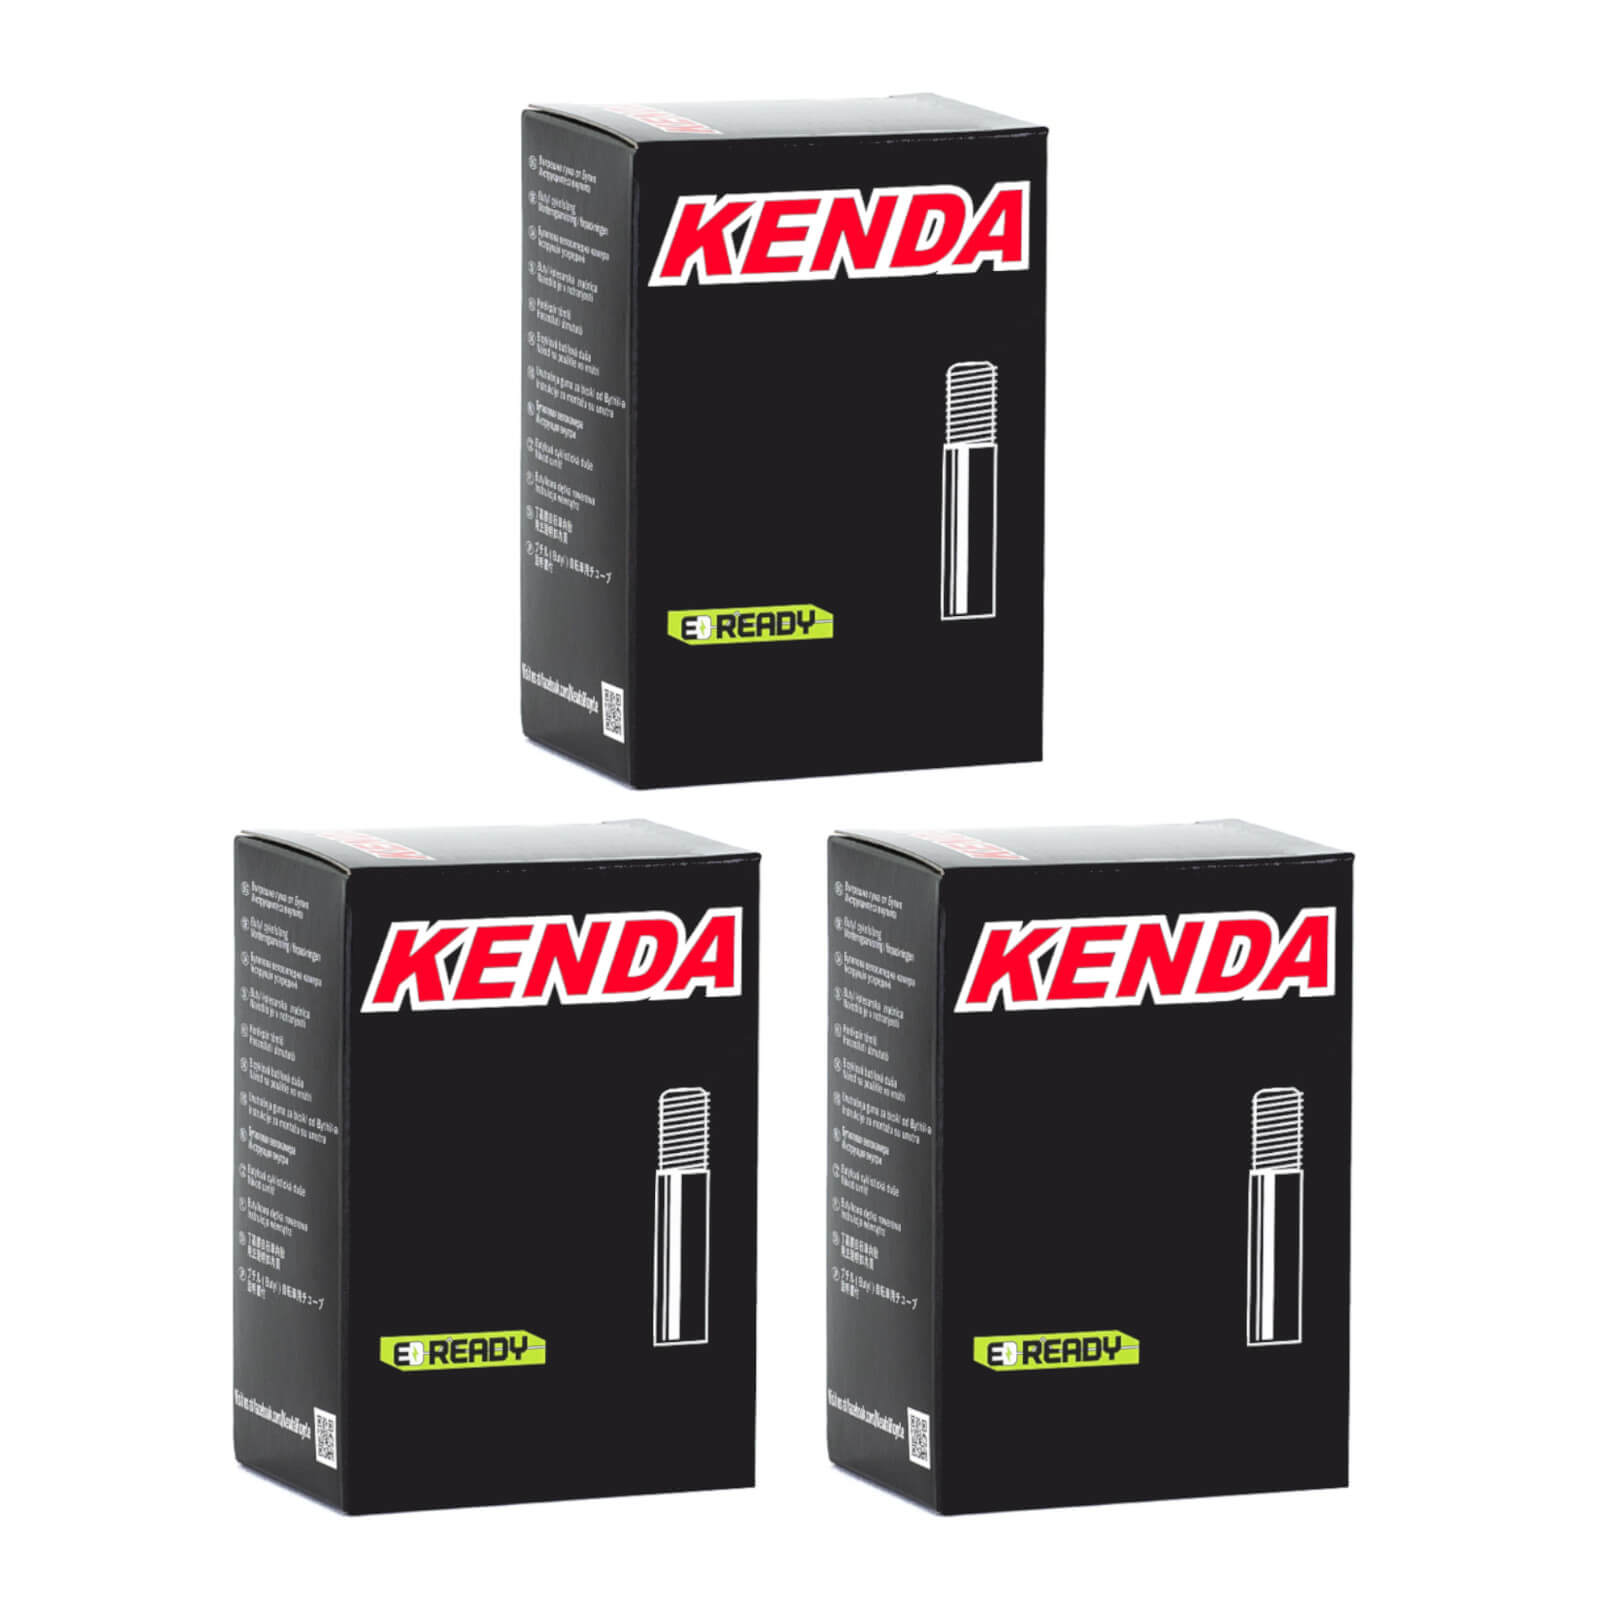 Kenda 20x1.0-1.5" 20 Inch Schrader Valve Bike Inner Tube Pack of 3